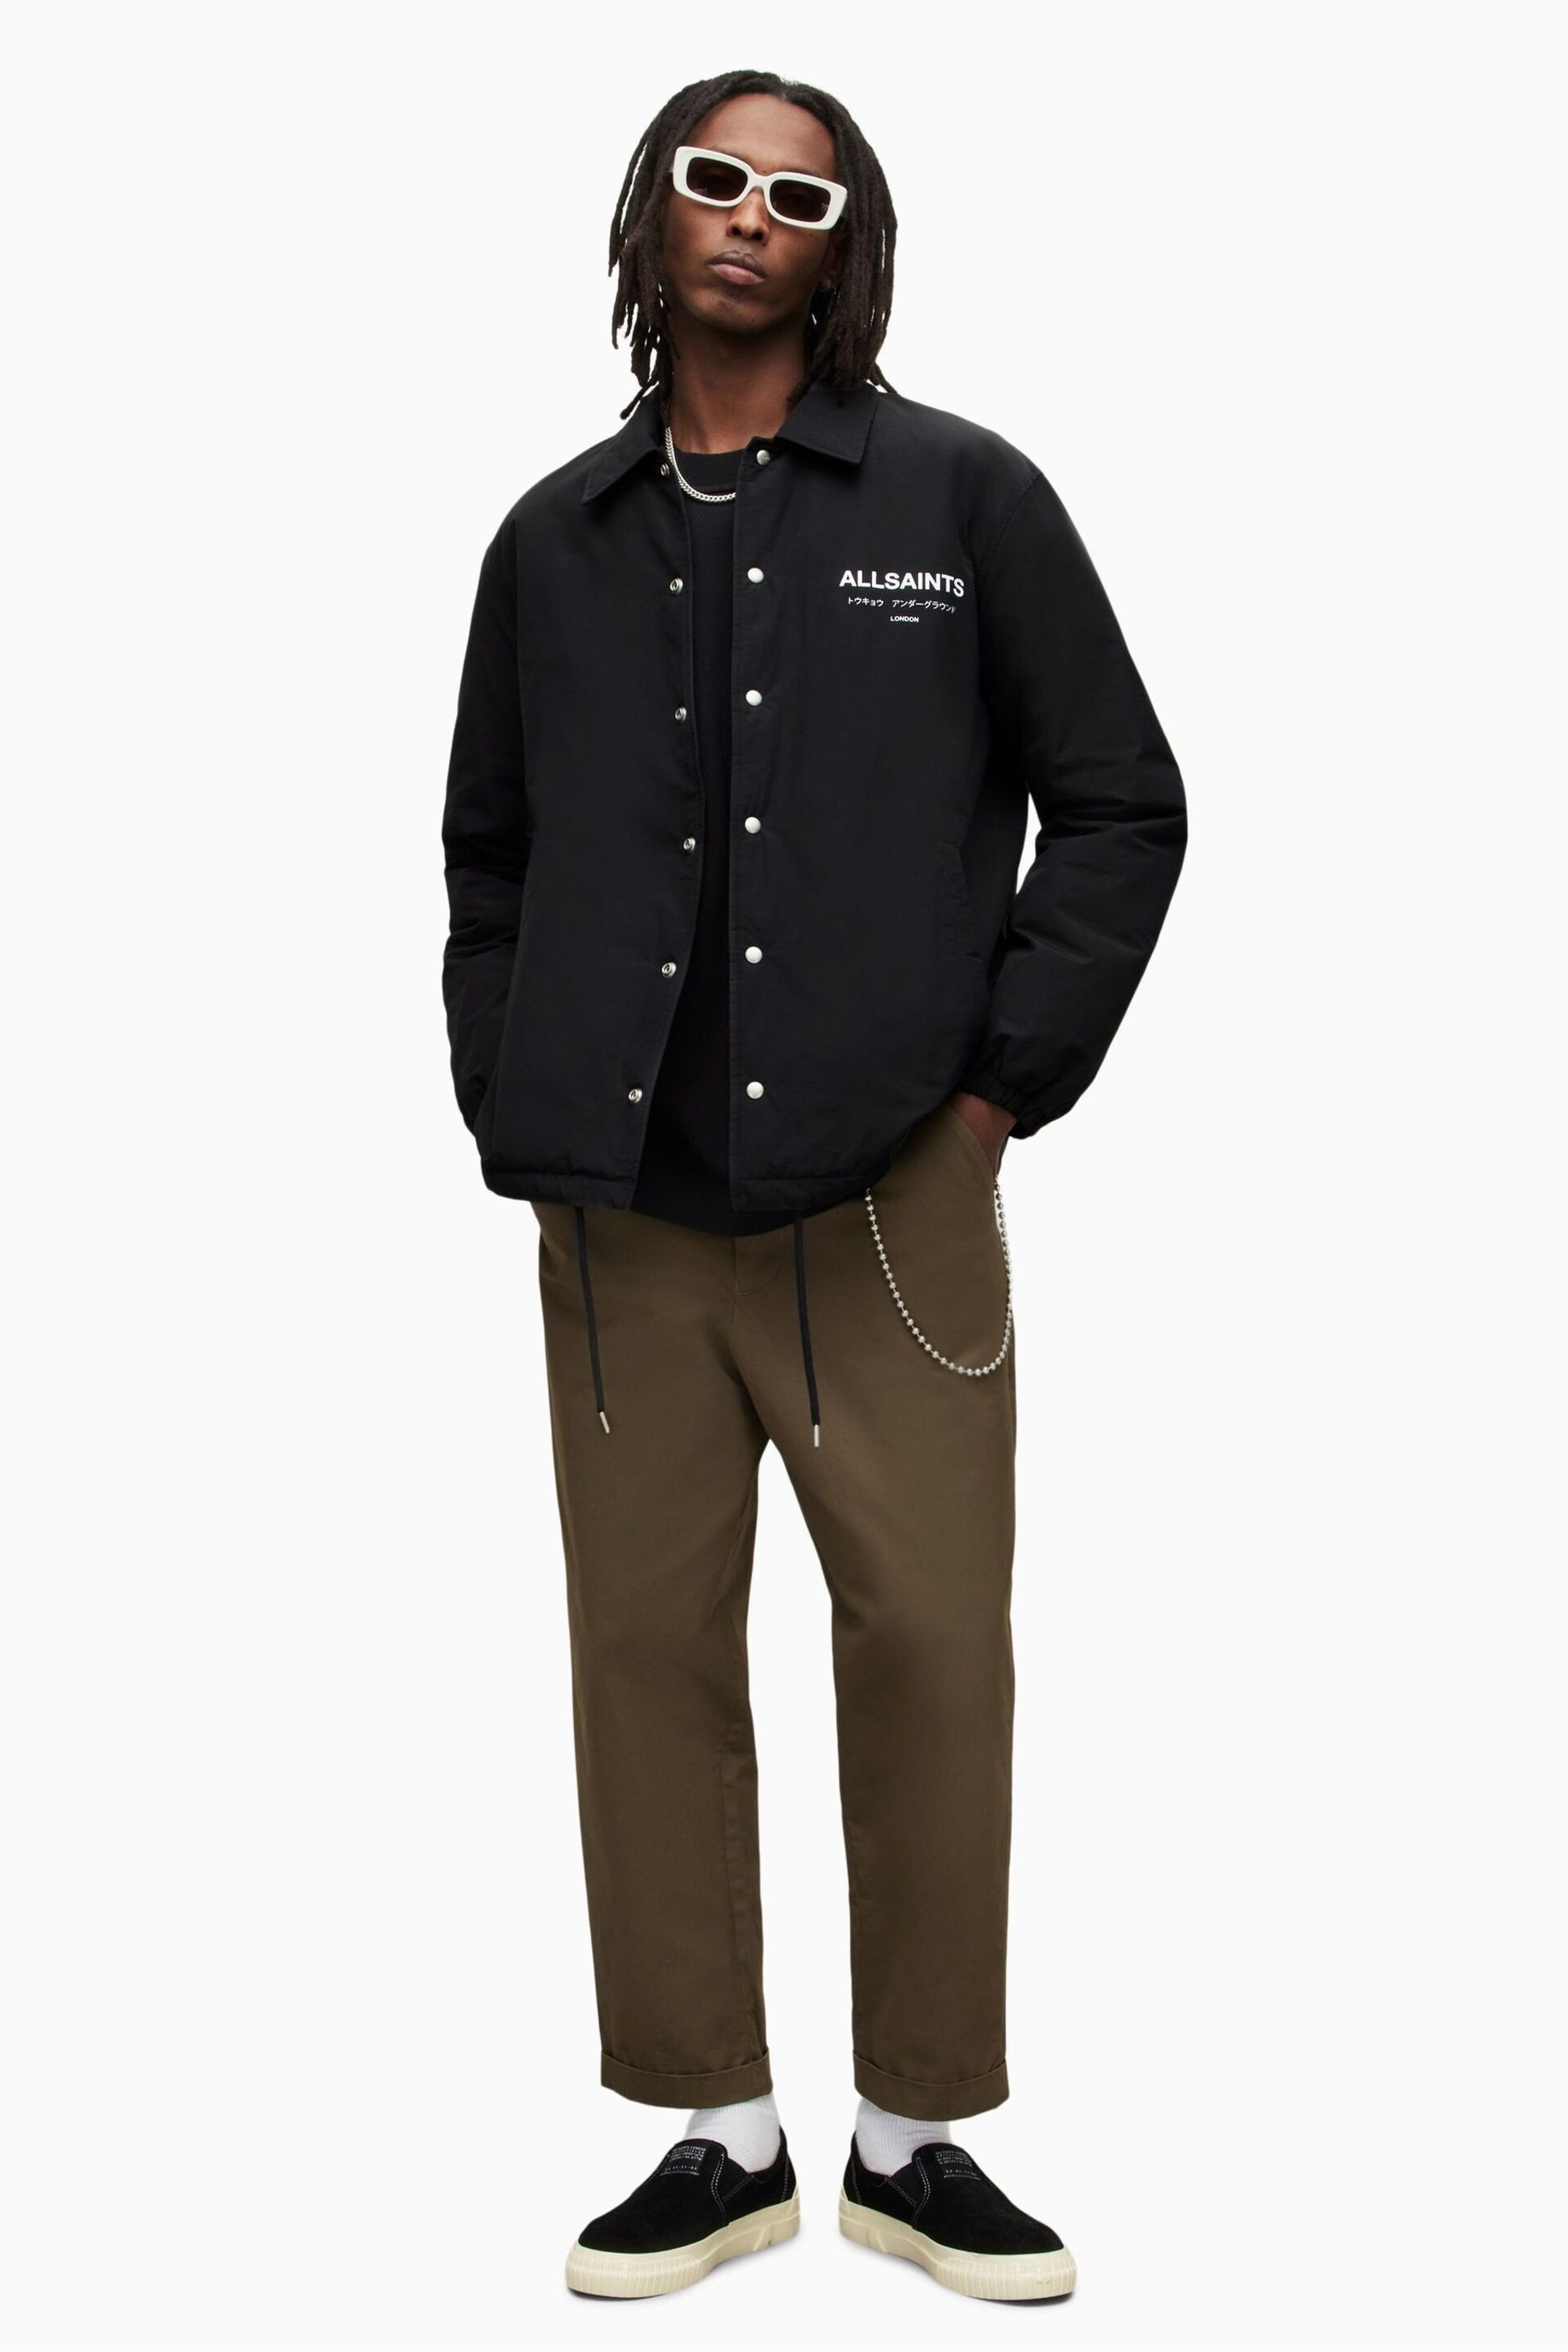 AllSaints Black Underground Coach Jacket - Image 6 of 9